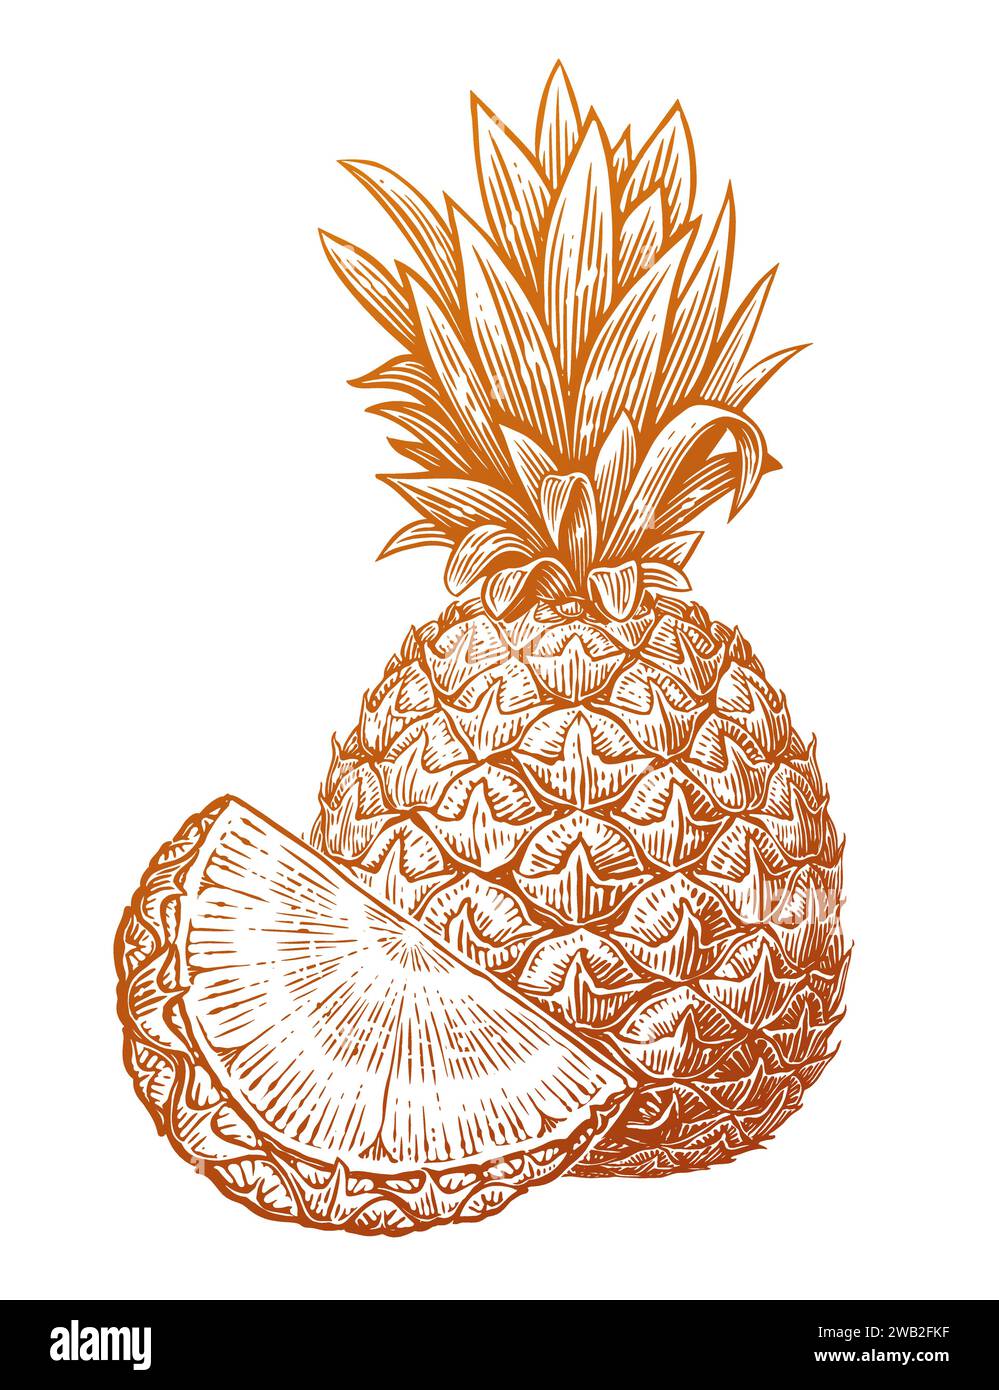 Ananas mit Scheibe, handgezeichnete Skizze. Umweltfreundliches, frisches Essen. Vektor-Illustration tropischer Früchte Stock Vektor